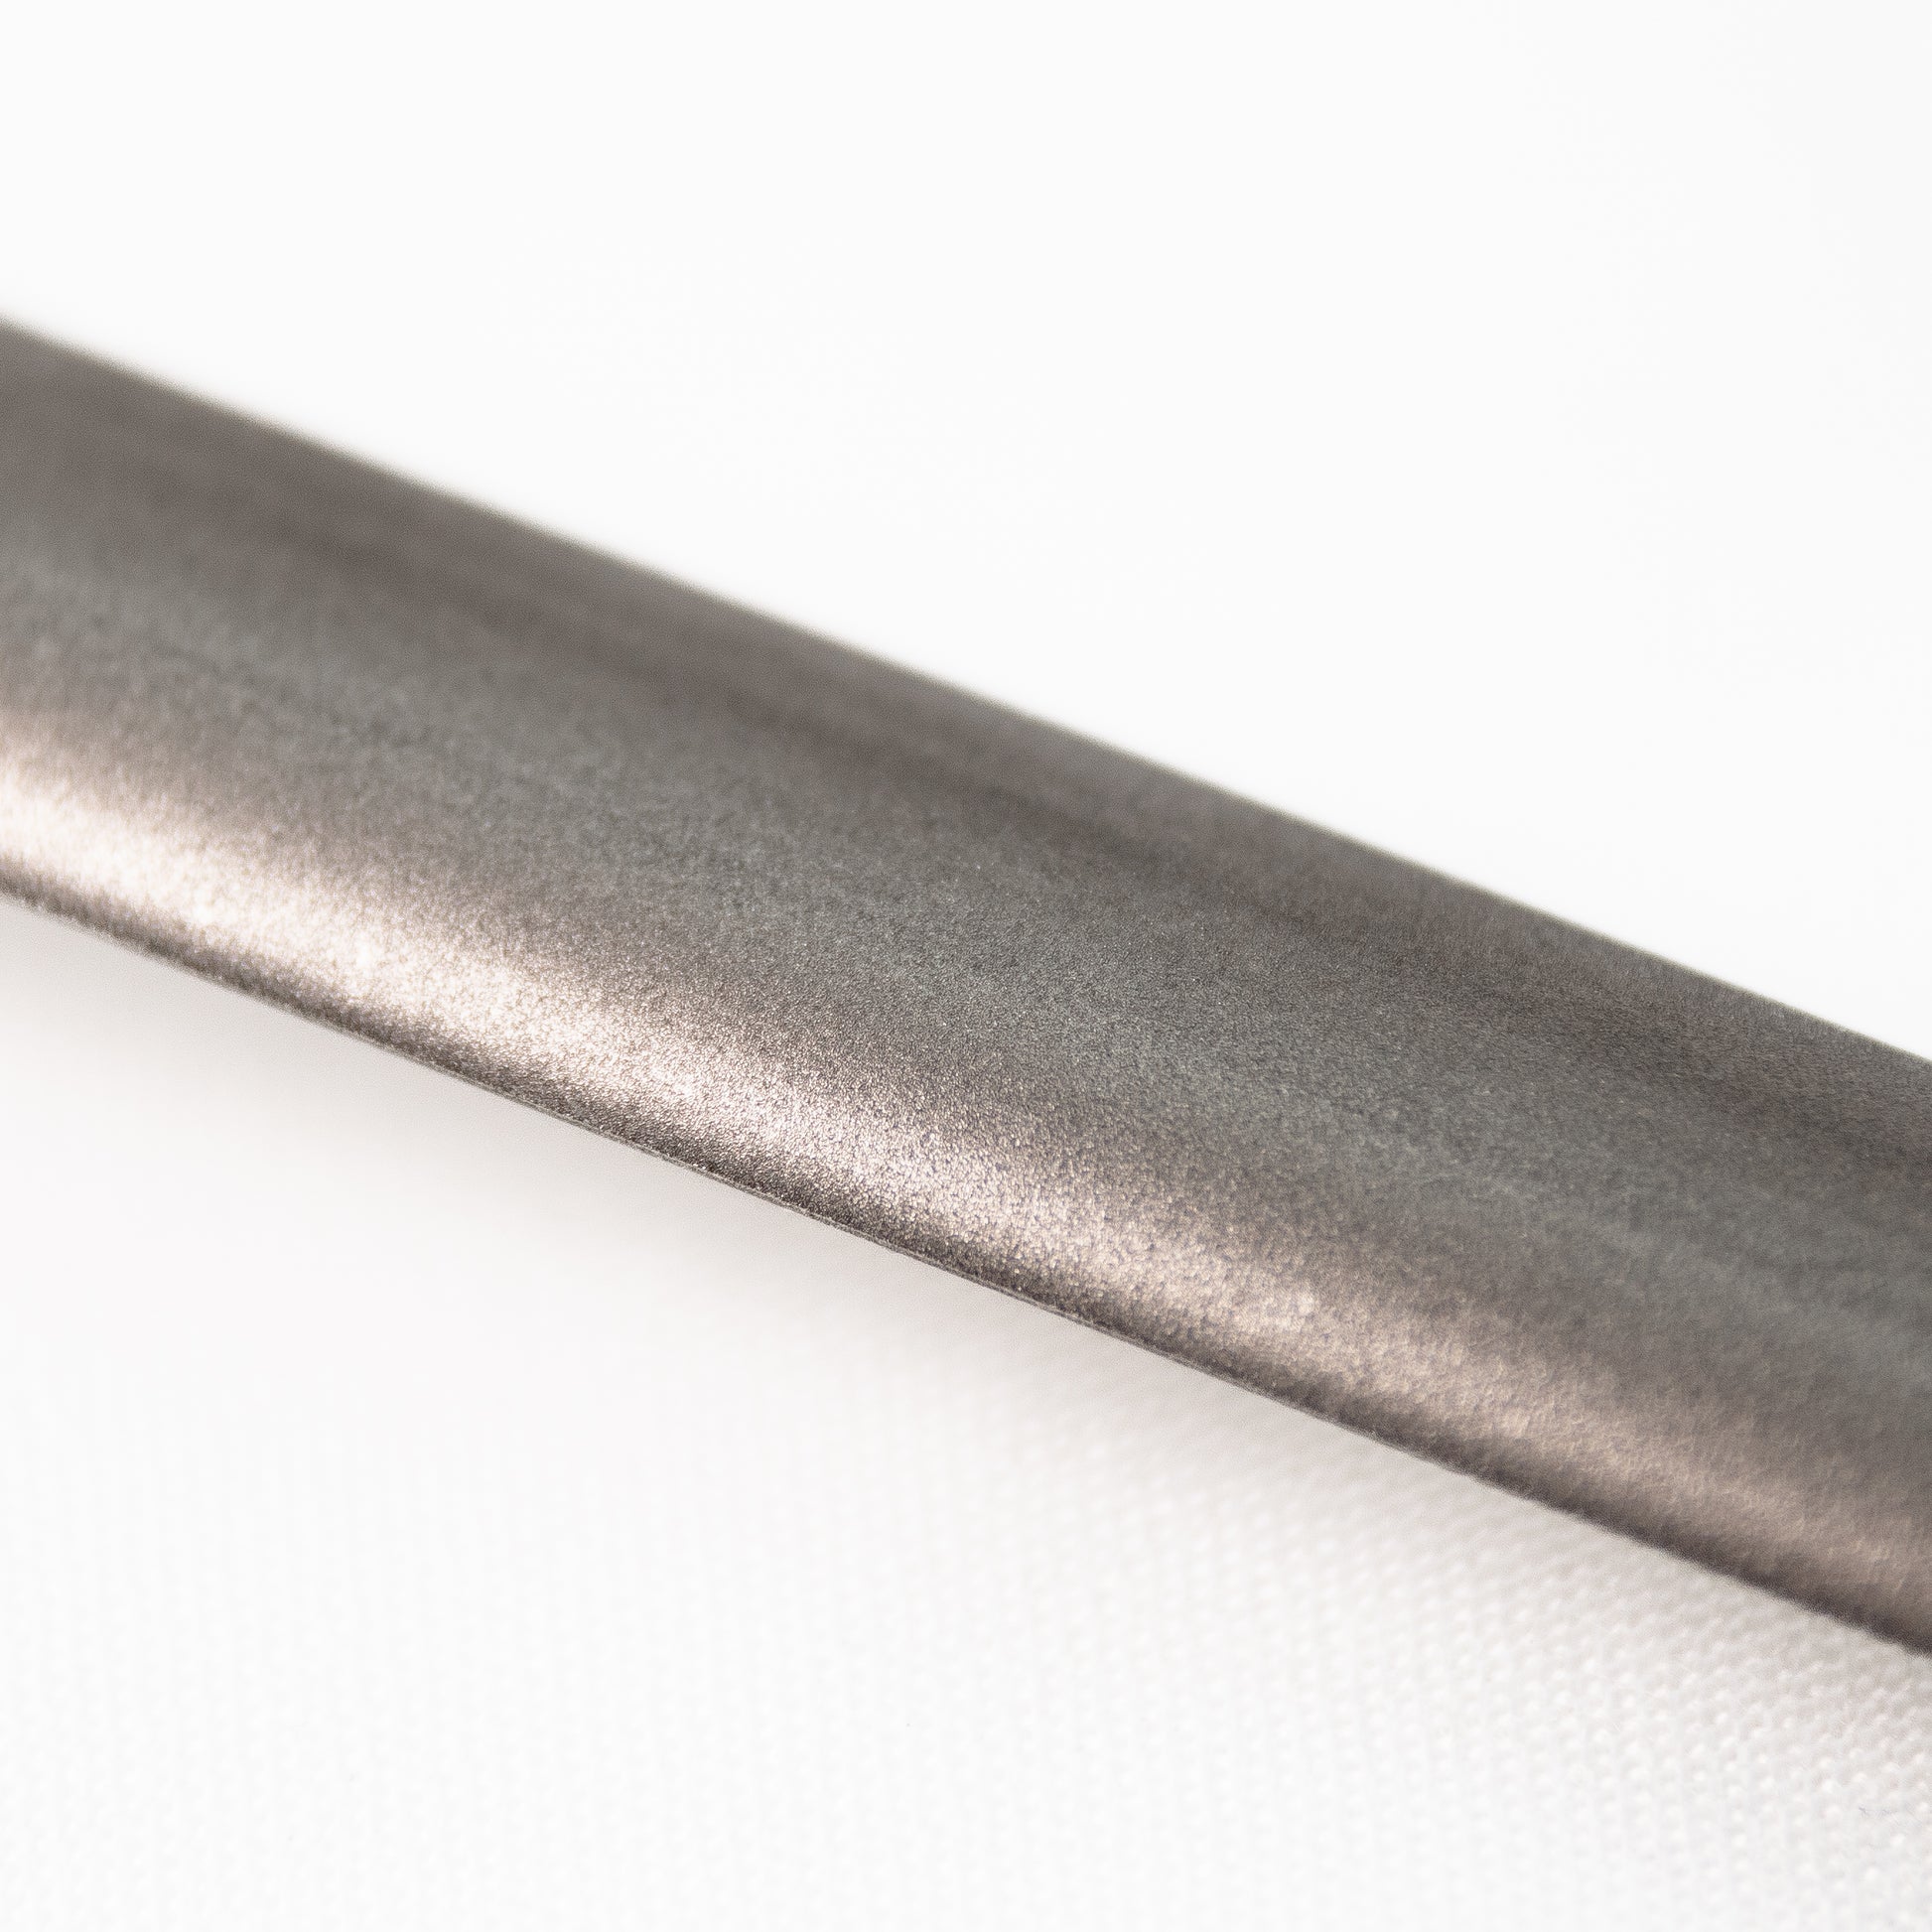 Skerper Basic fusil diamant, 30 cm, SH005  Achetez à prix avantageux chez  knivesandtools.be